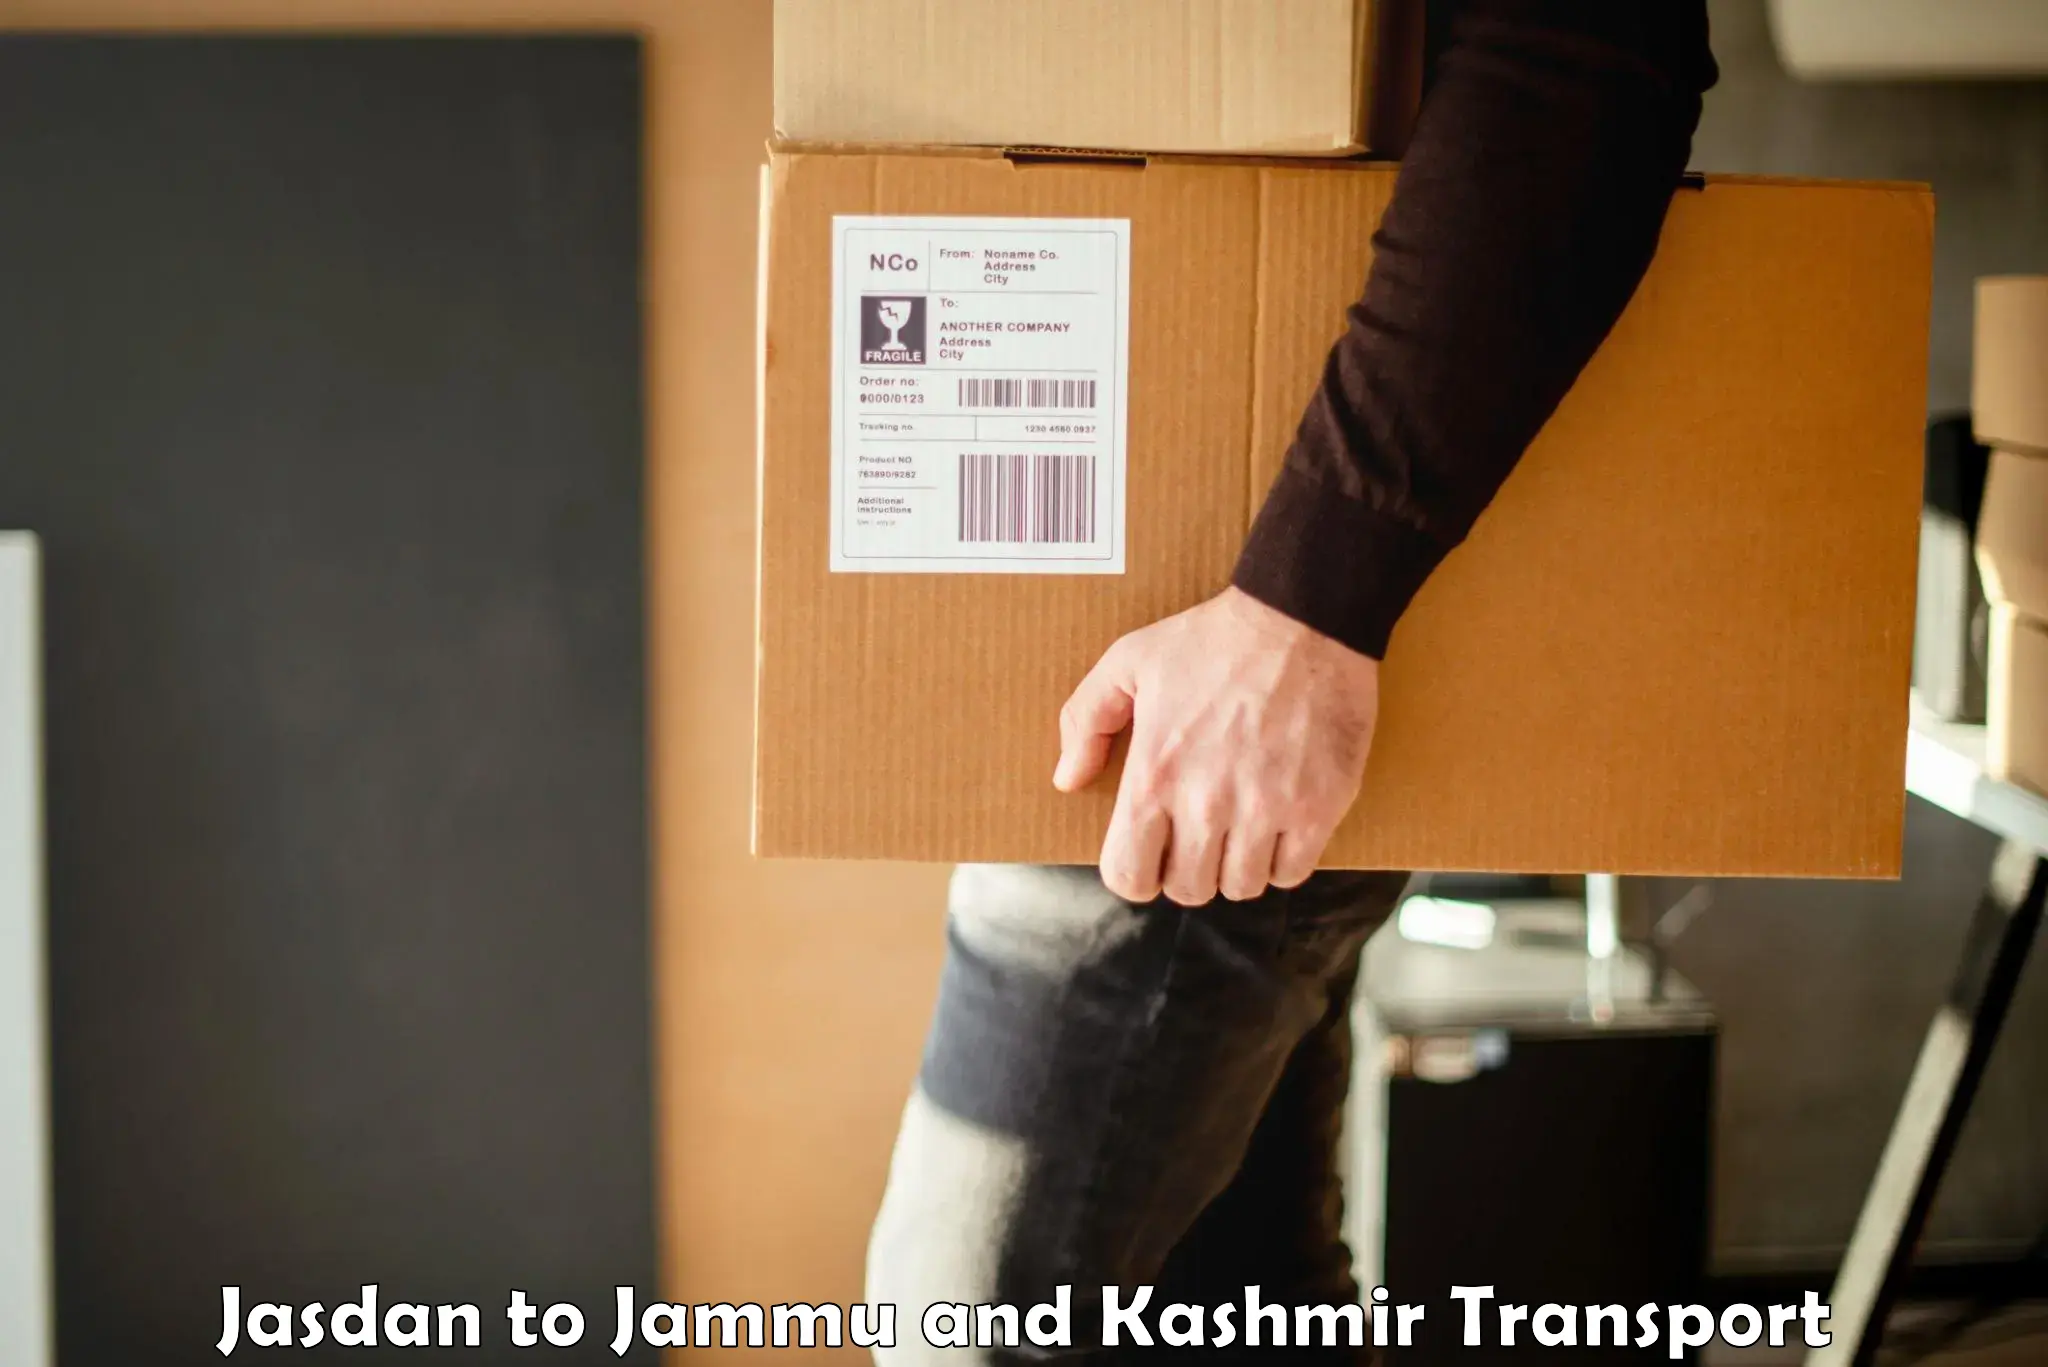 Air cargo transport services Jasdan to Jammu and Kashmir